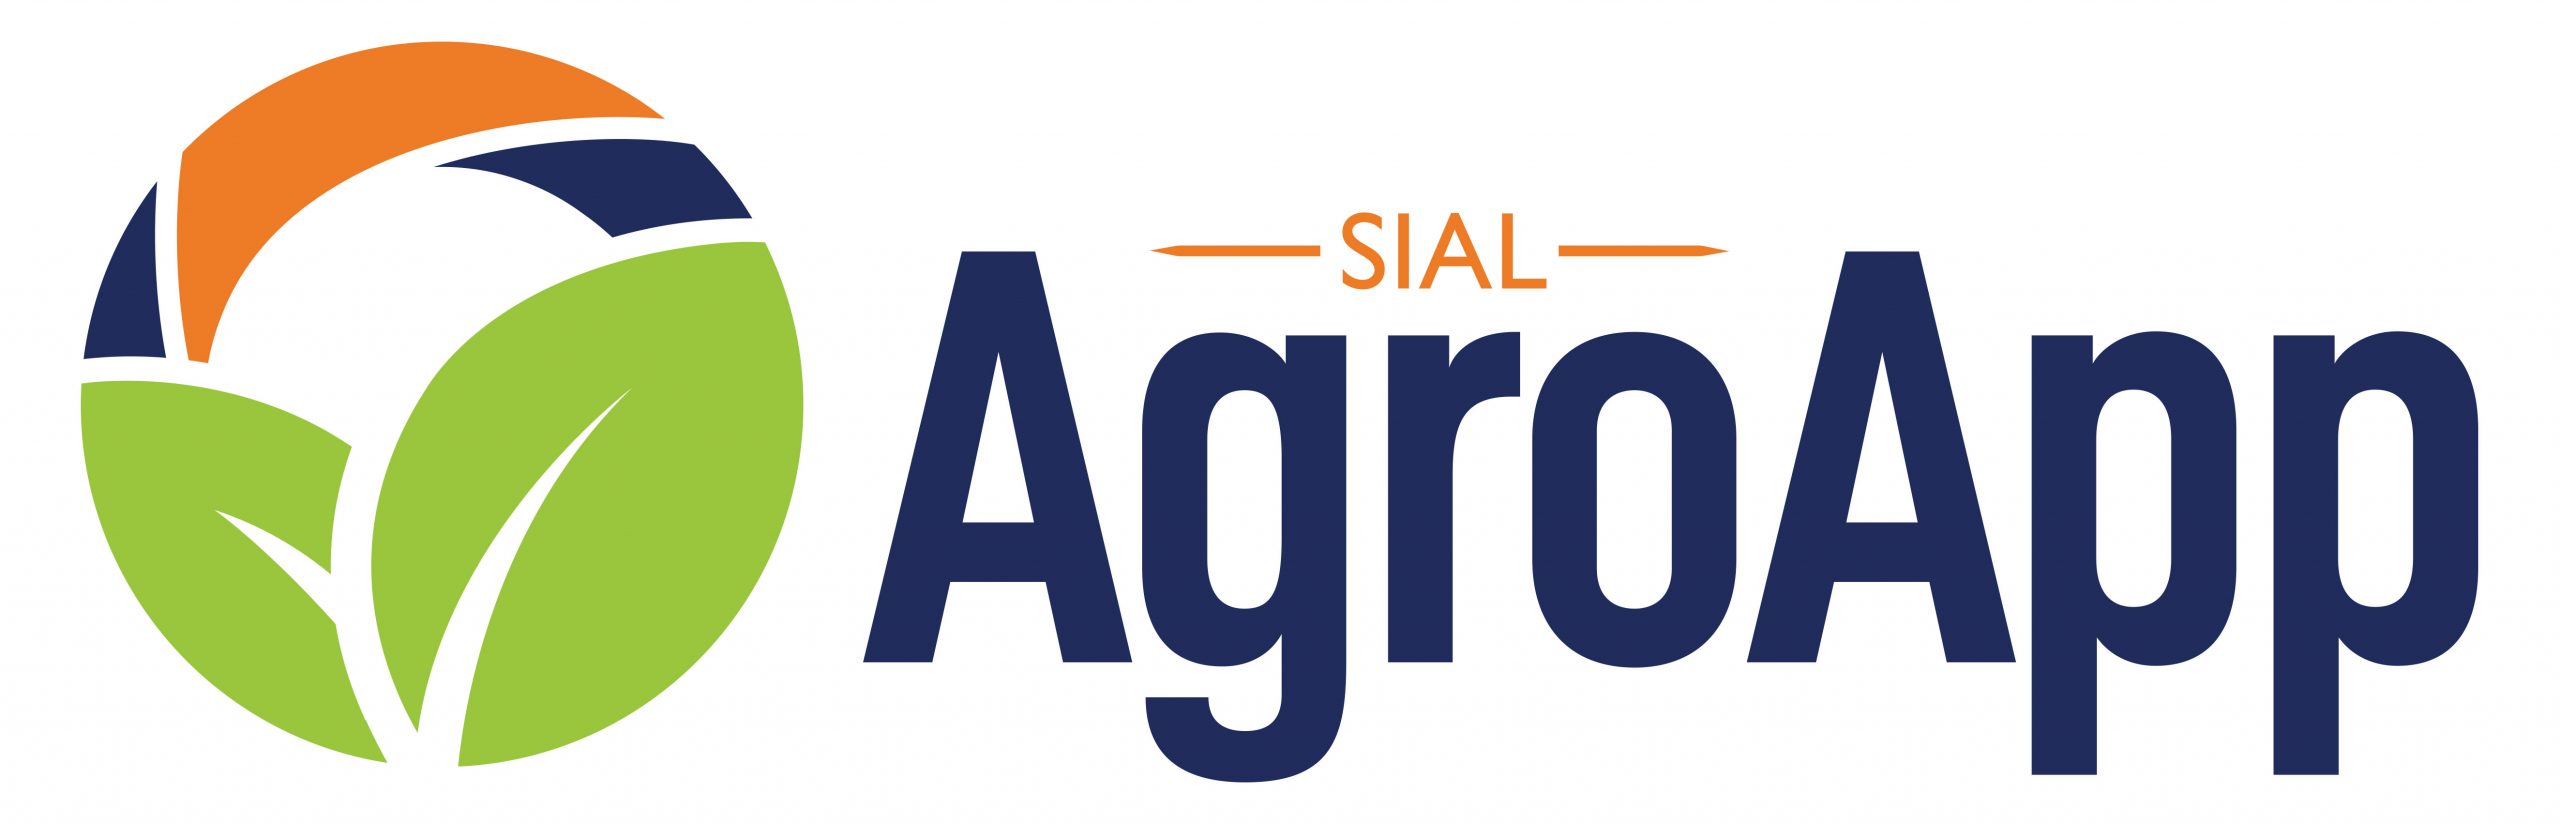 SIAL AGRO APP
 - AgroApp